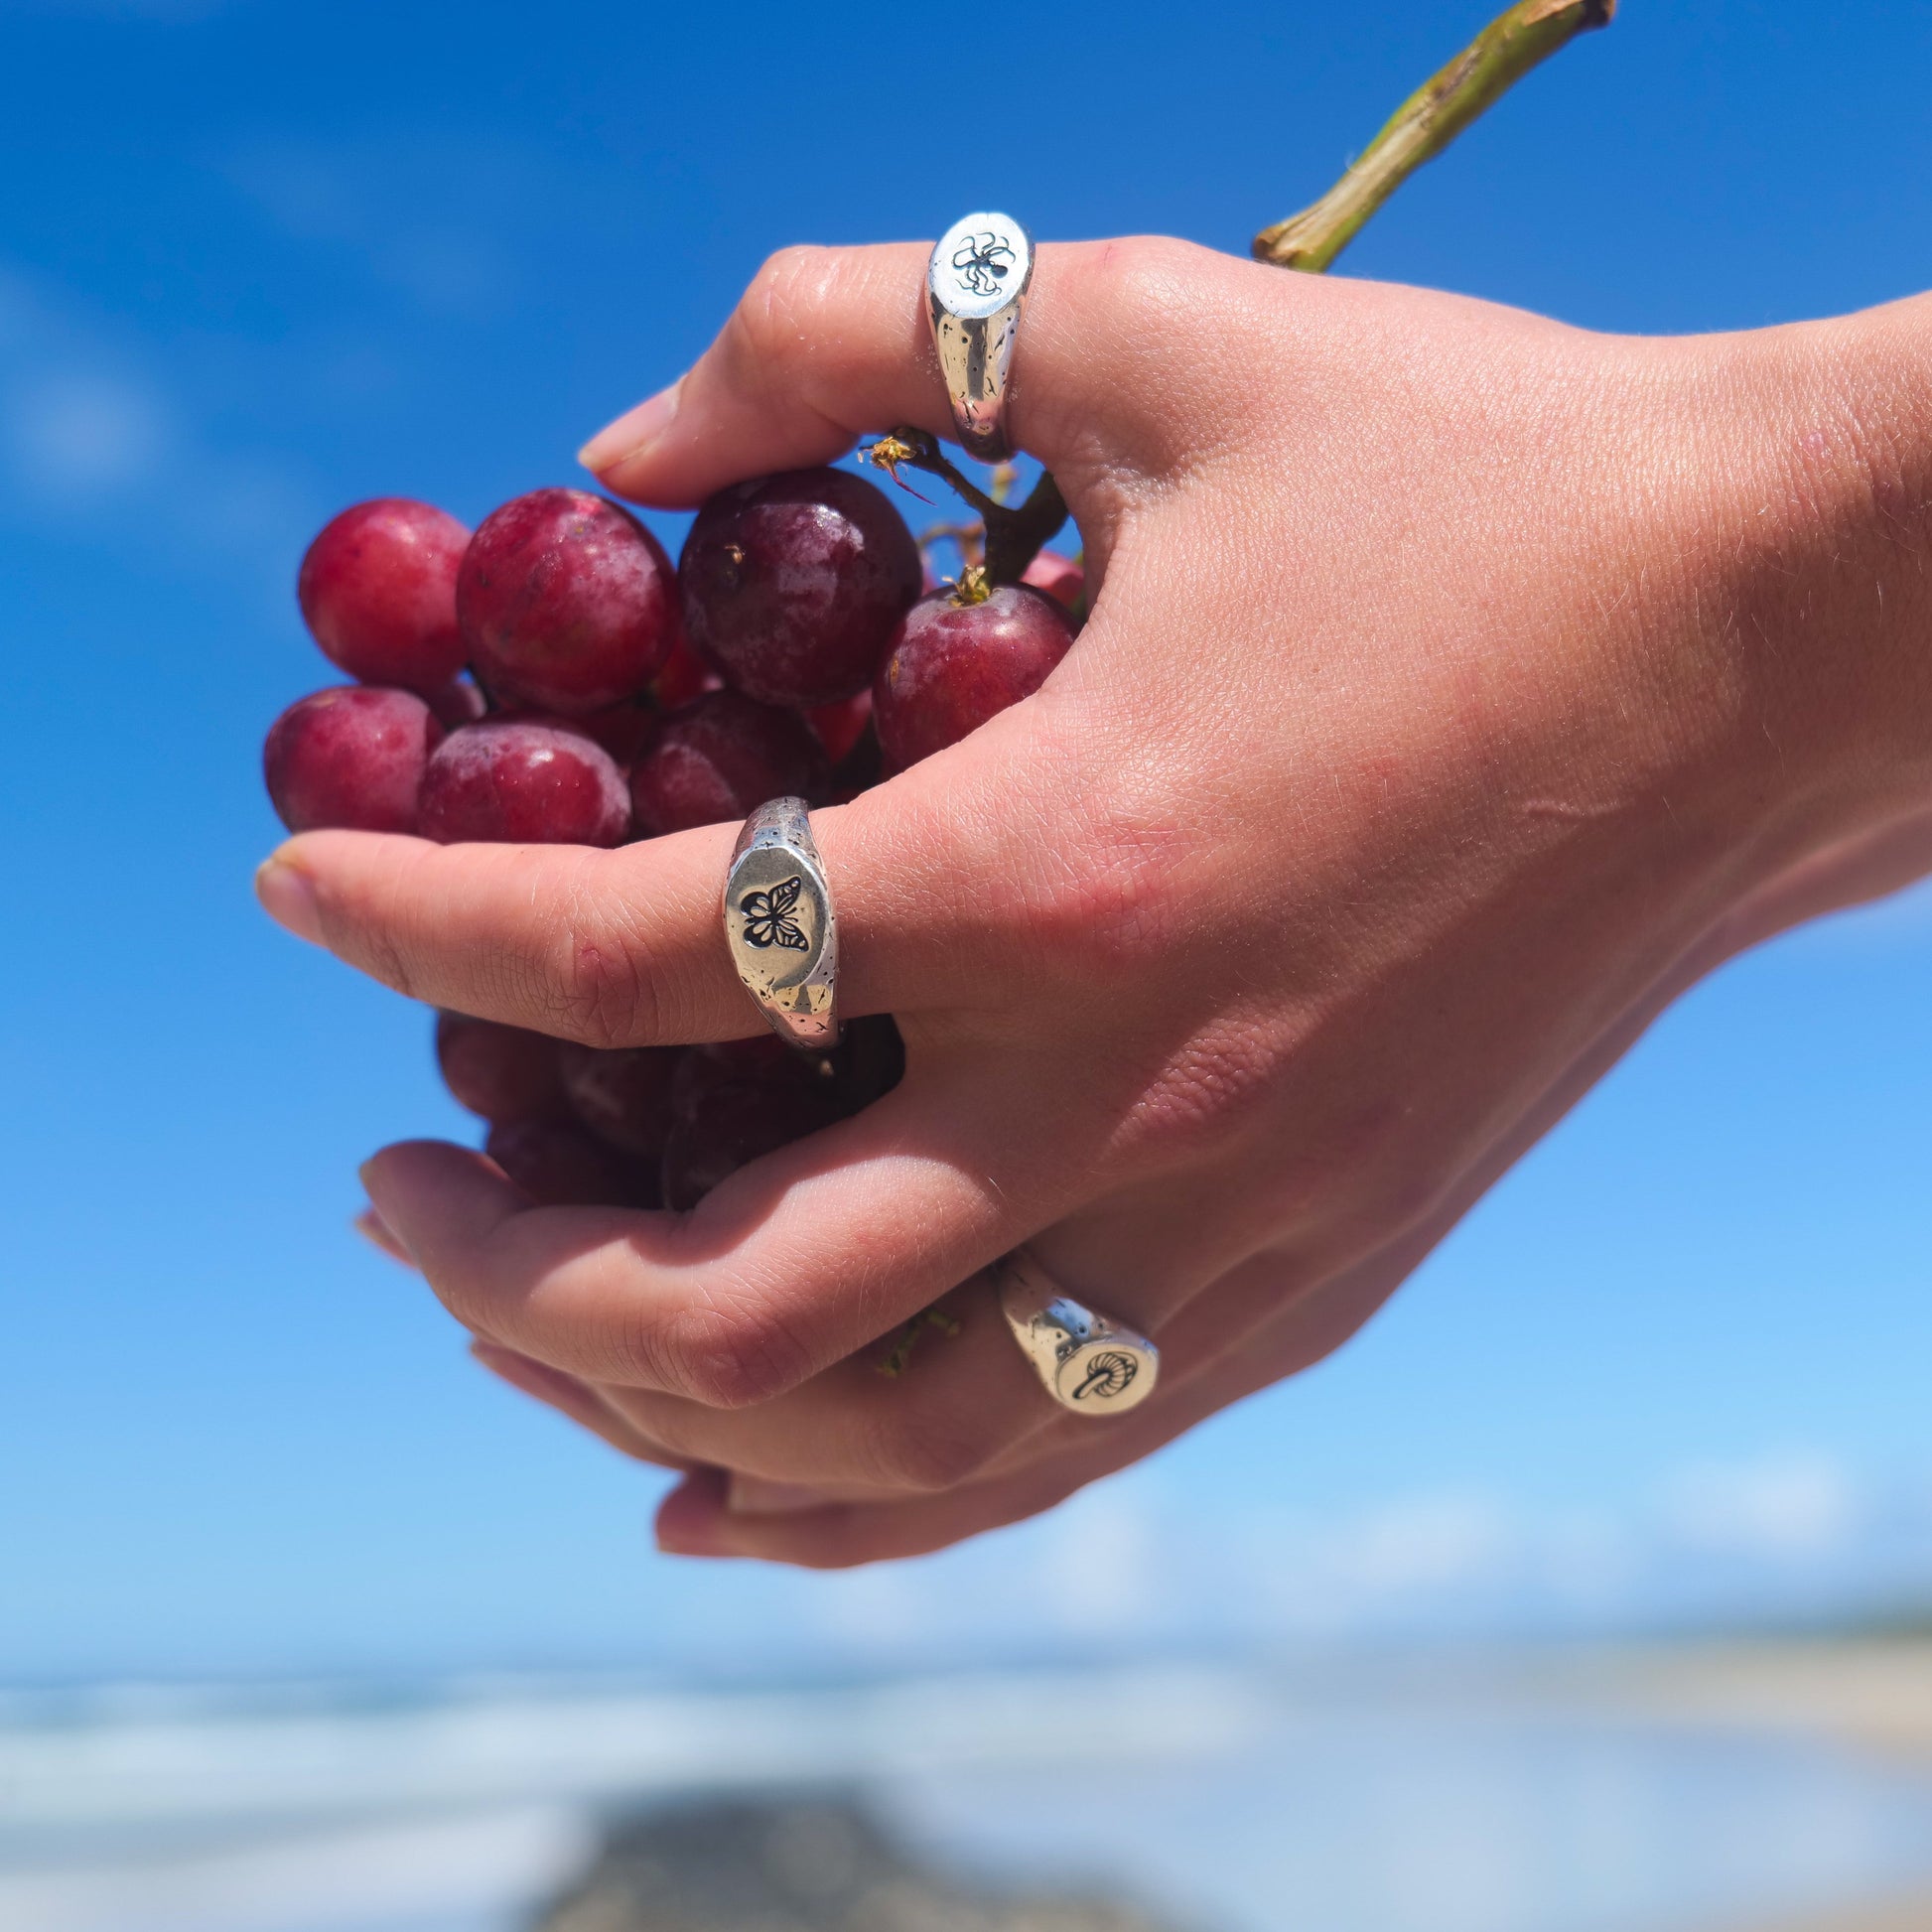 Woman holding grapes wearing kraken + butterfly + mushy rings.